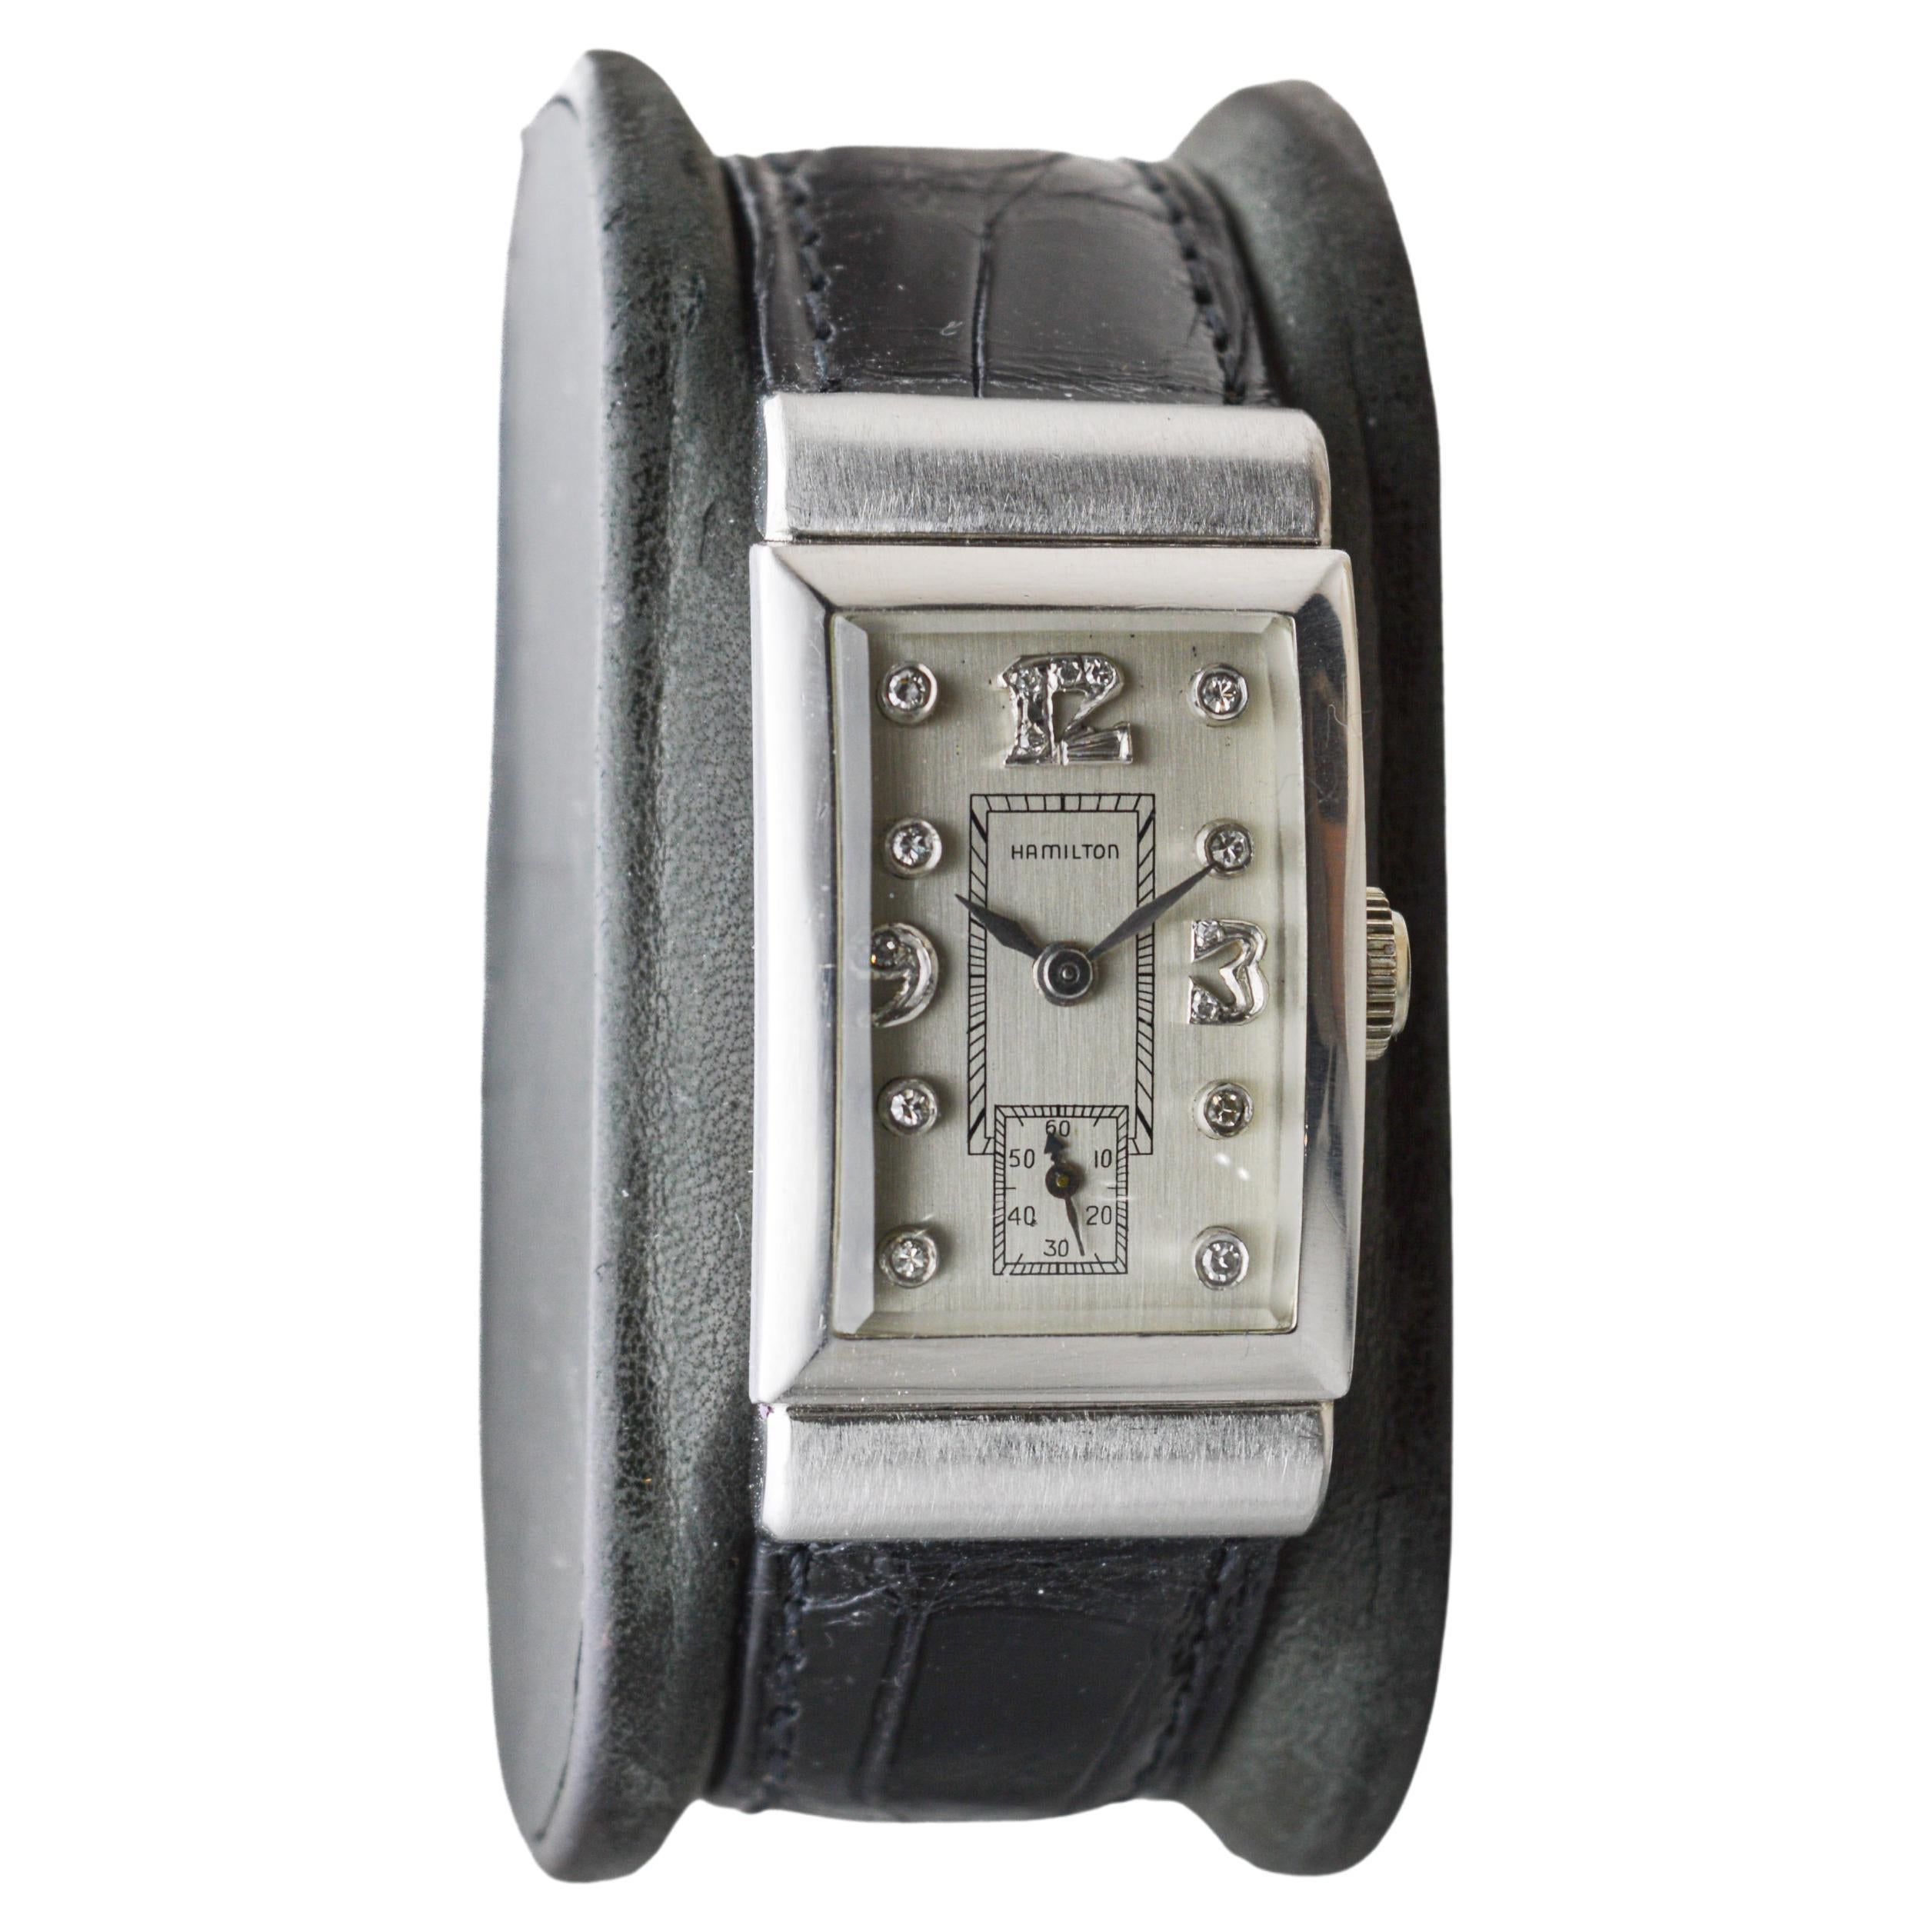 FABRIK / HAUS: Hamilton Watch Company
STIL / REFERENZ: Art Deco /Tank Style 
METALL / MATERIAL: Platin
CIRCA / JAHR: 1940er Jahre 
ABMESSUNGEN / GRÖSSE: Länge 40mm X Breite 21mm
UHRWERK / KALIBER: Handaufzug / 19 Jewels / Kaliber 982
ZIFFERBLATT /